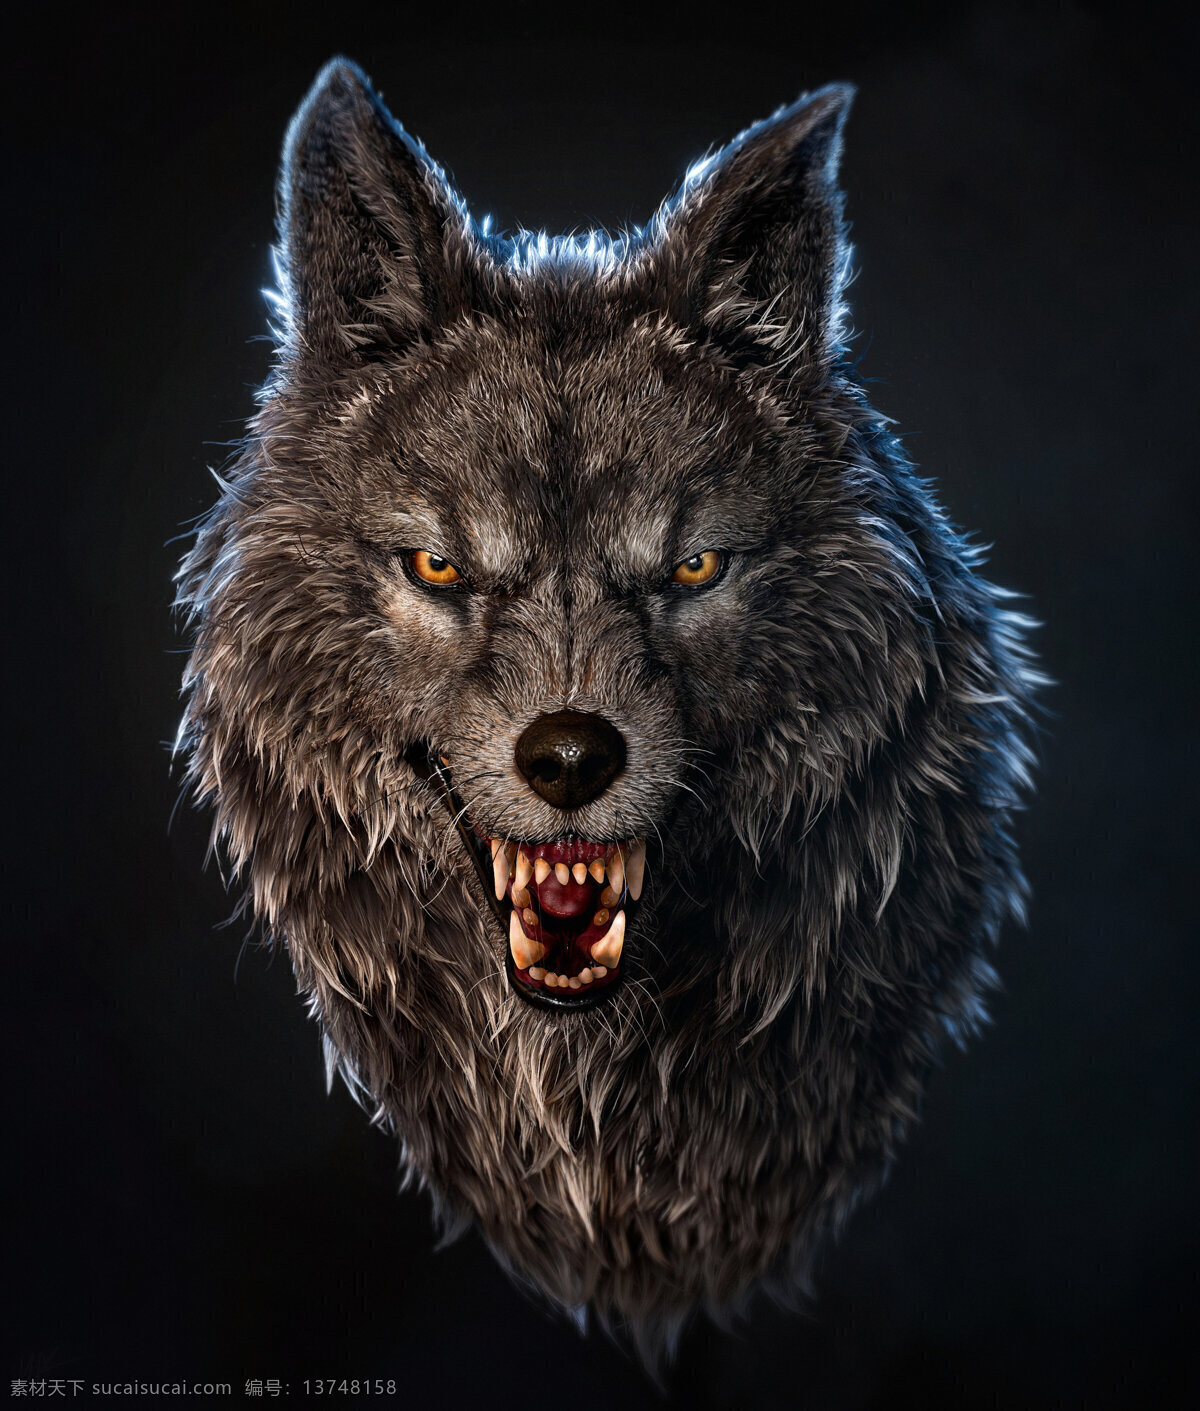 狼头 3d 效果图 狼 狼图腾 狼表情 野狼 恶狼 生物世界 野生动物